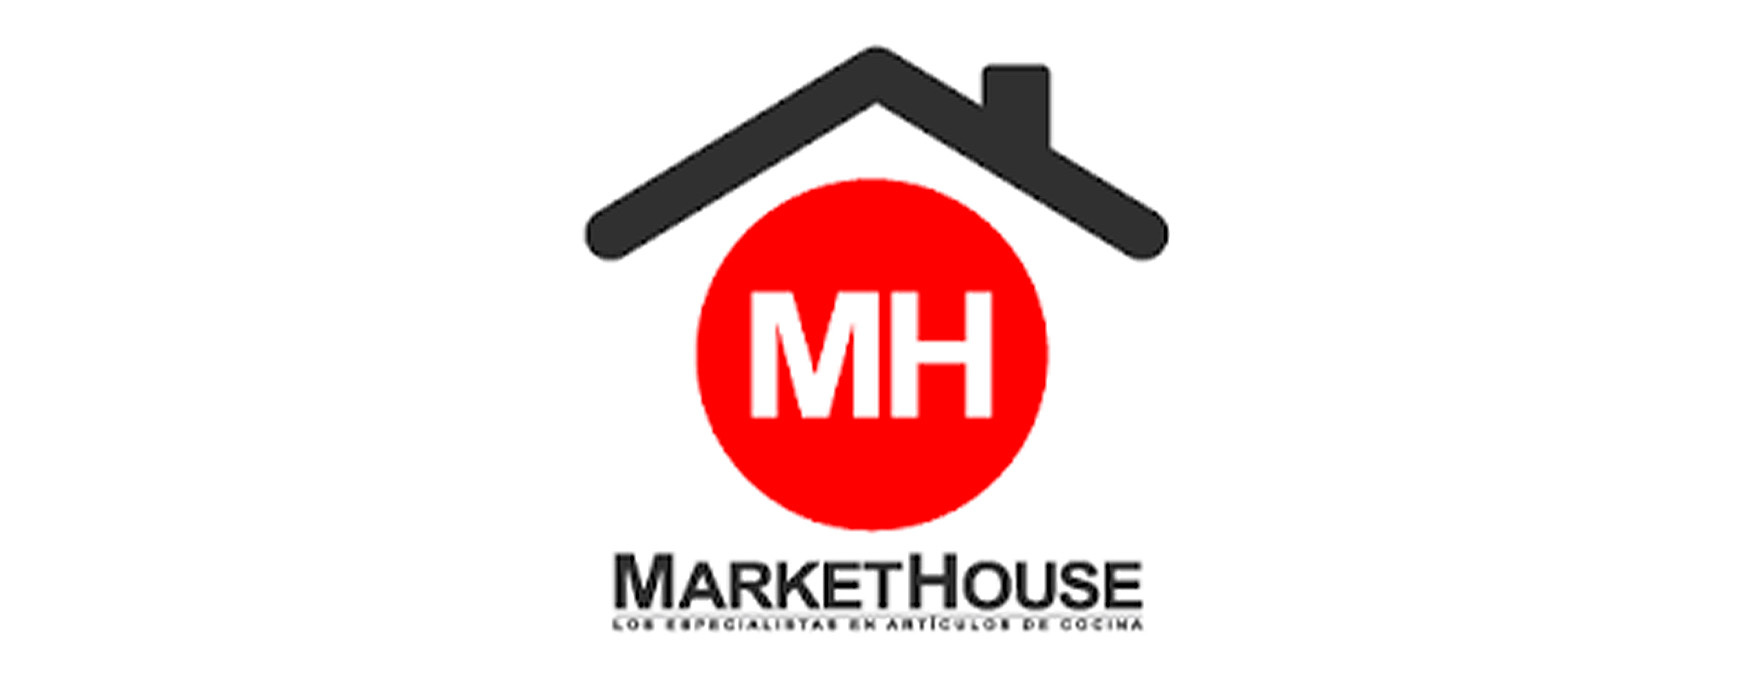 MarketHouse